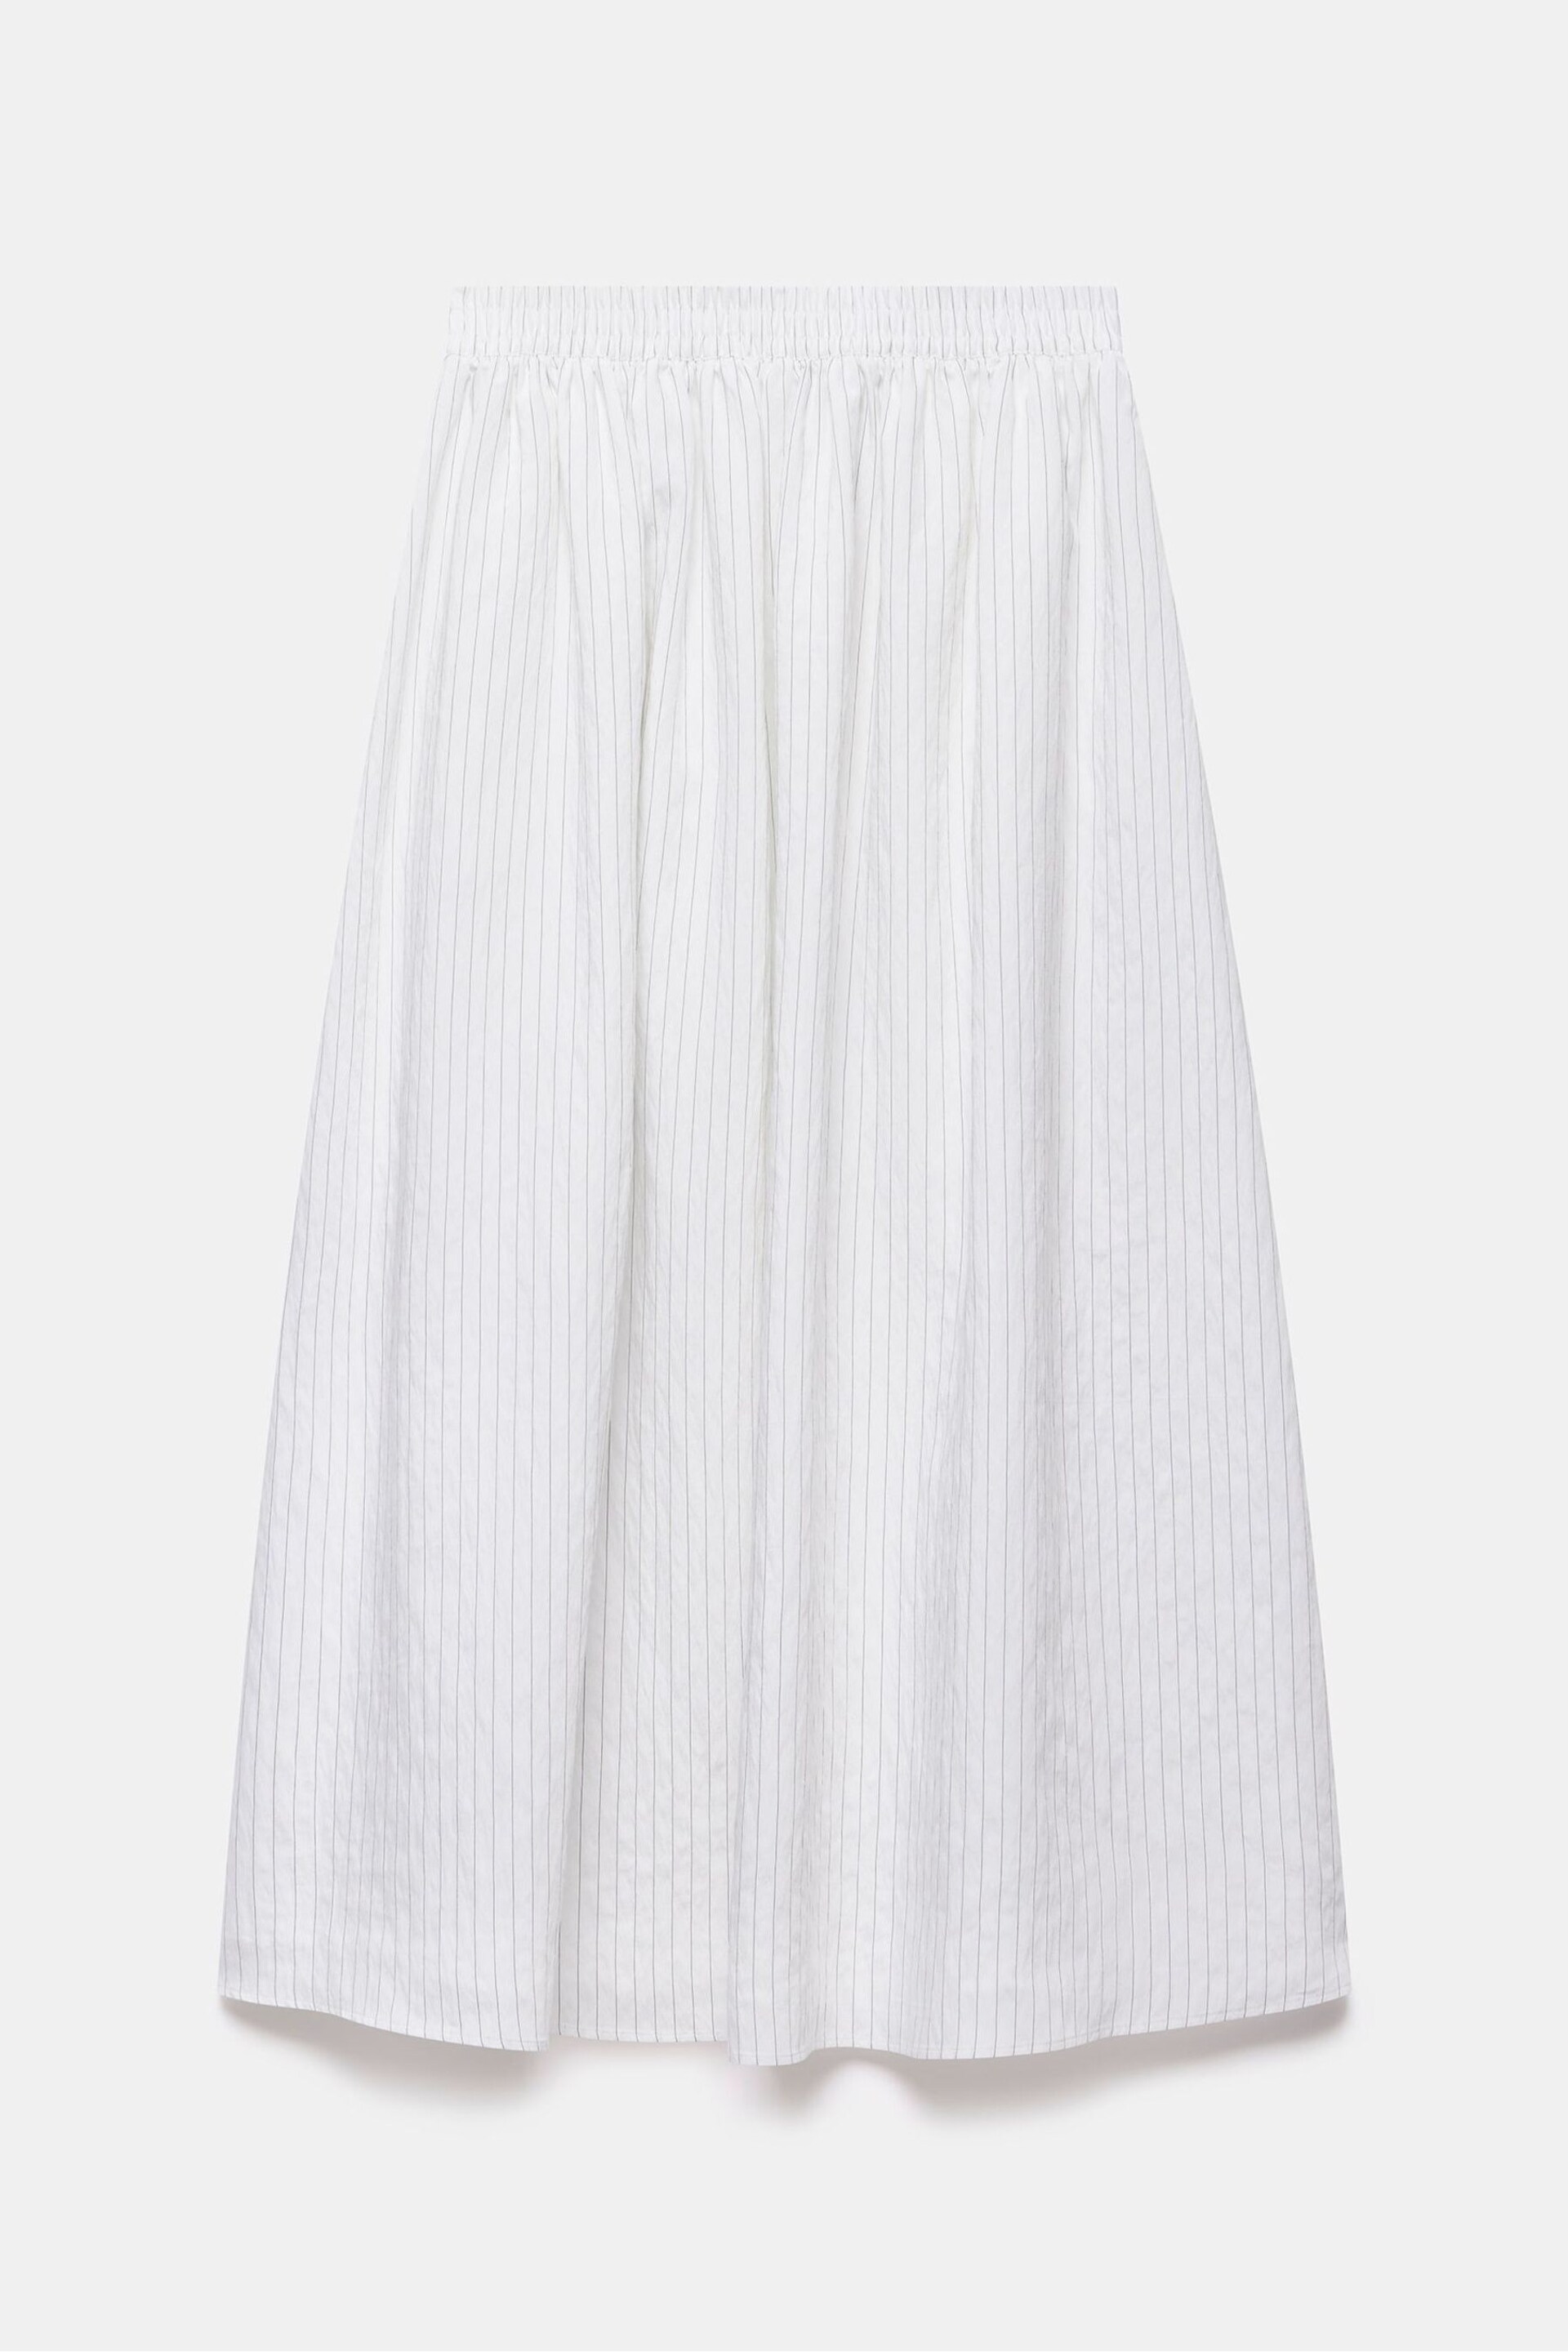 Mint Velvet White Striped Maxi Skirt - Image 4 of 4